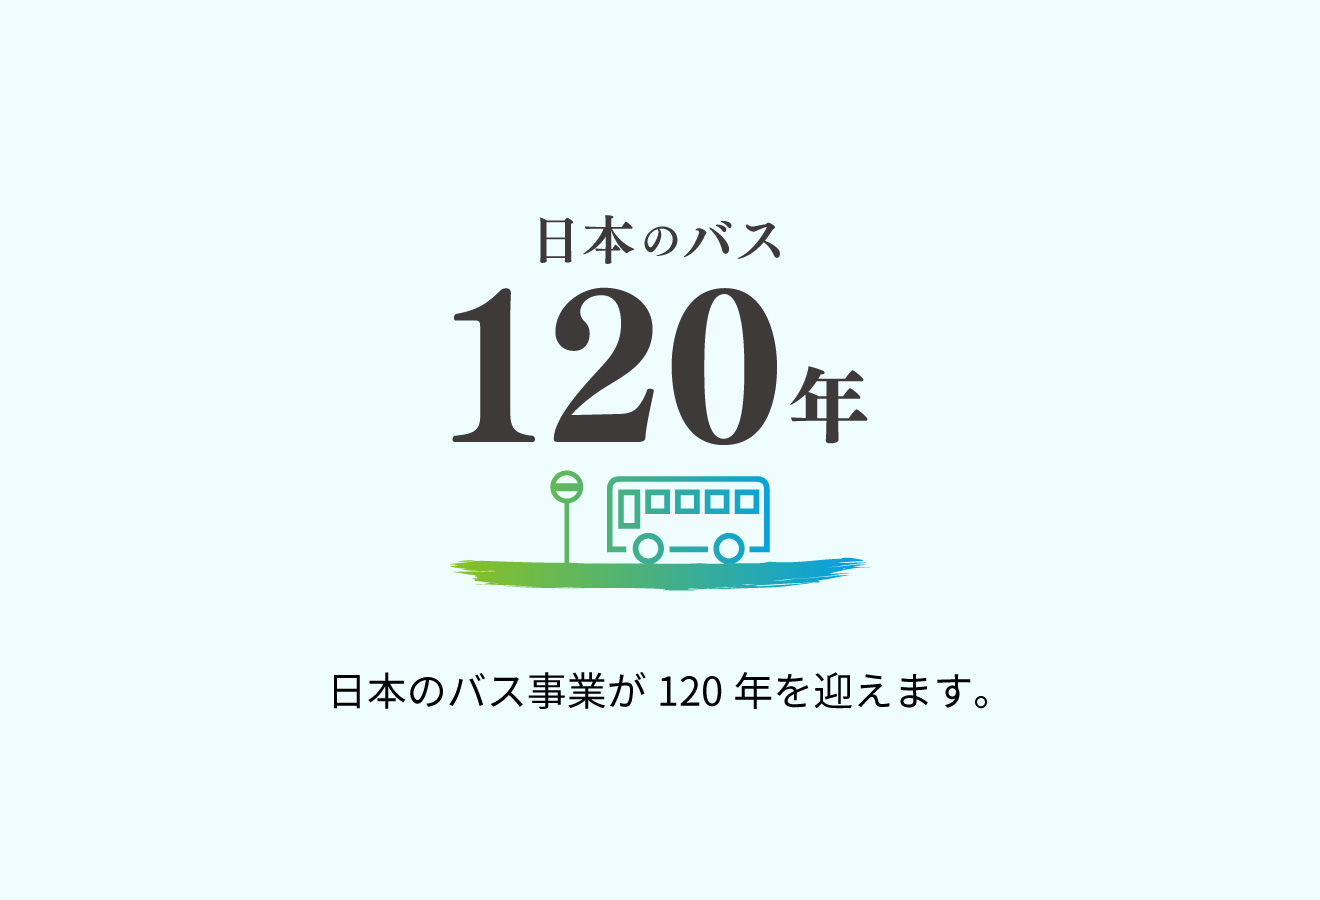 日本のバス事業が120年目を迎えました。